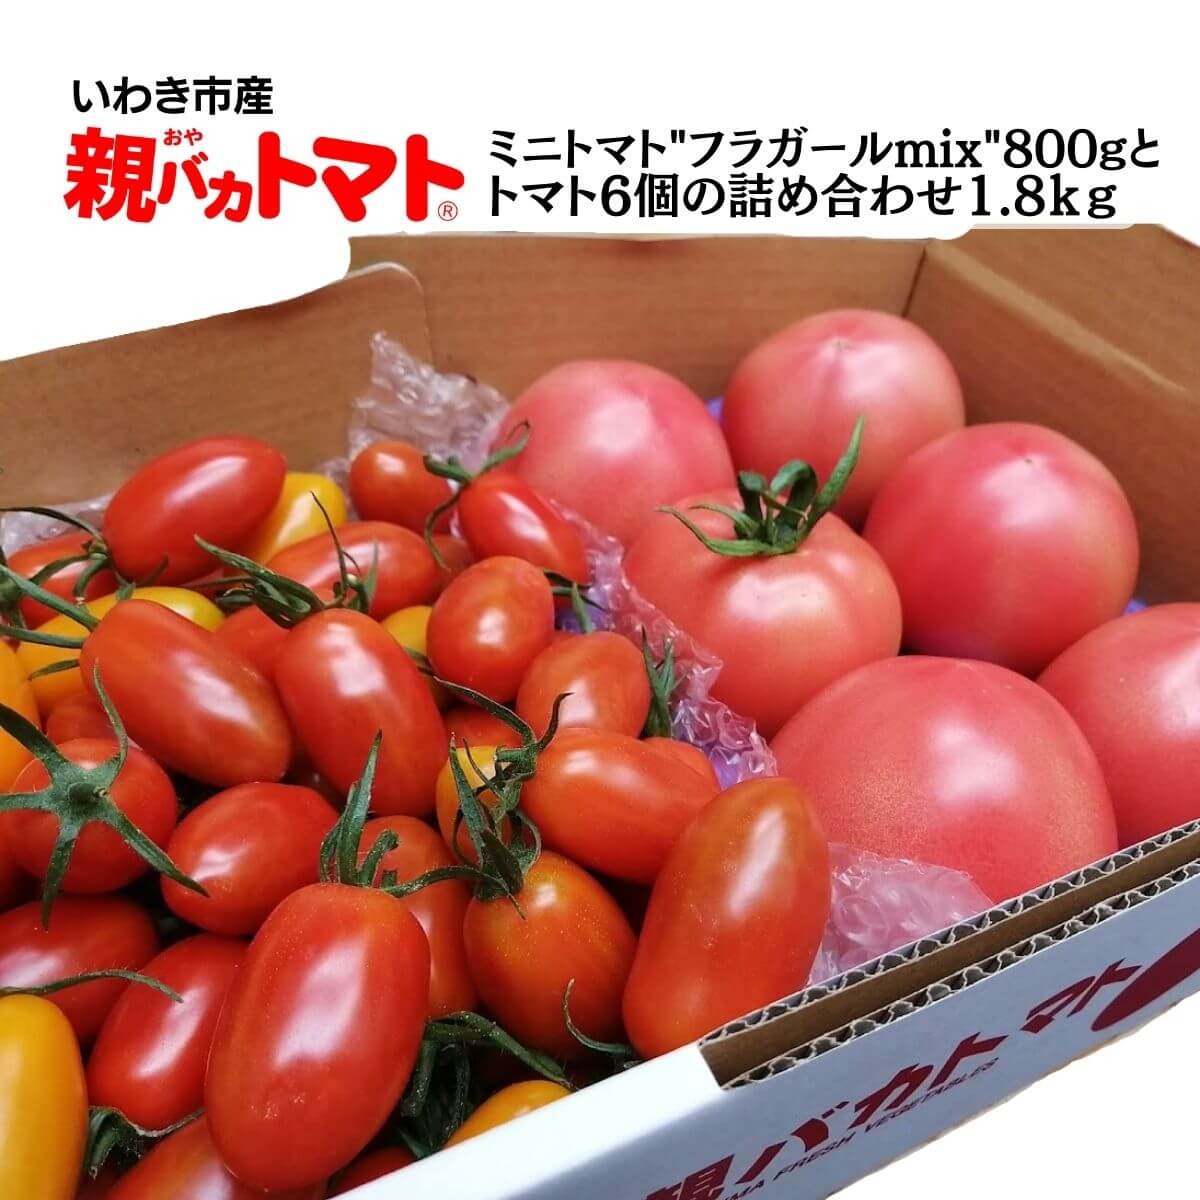 フラガールミックス800gとトマト6個の詰め合わせ1.8kg 税込1500円